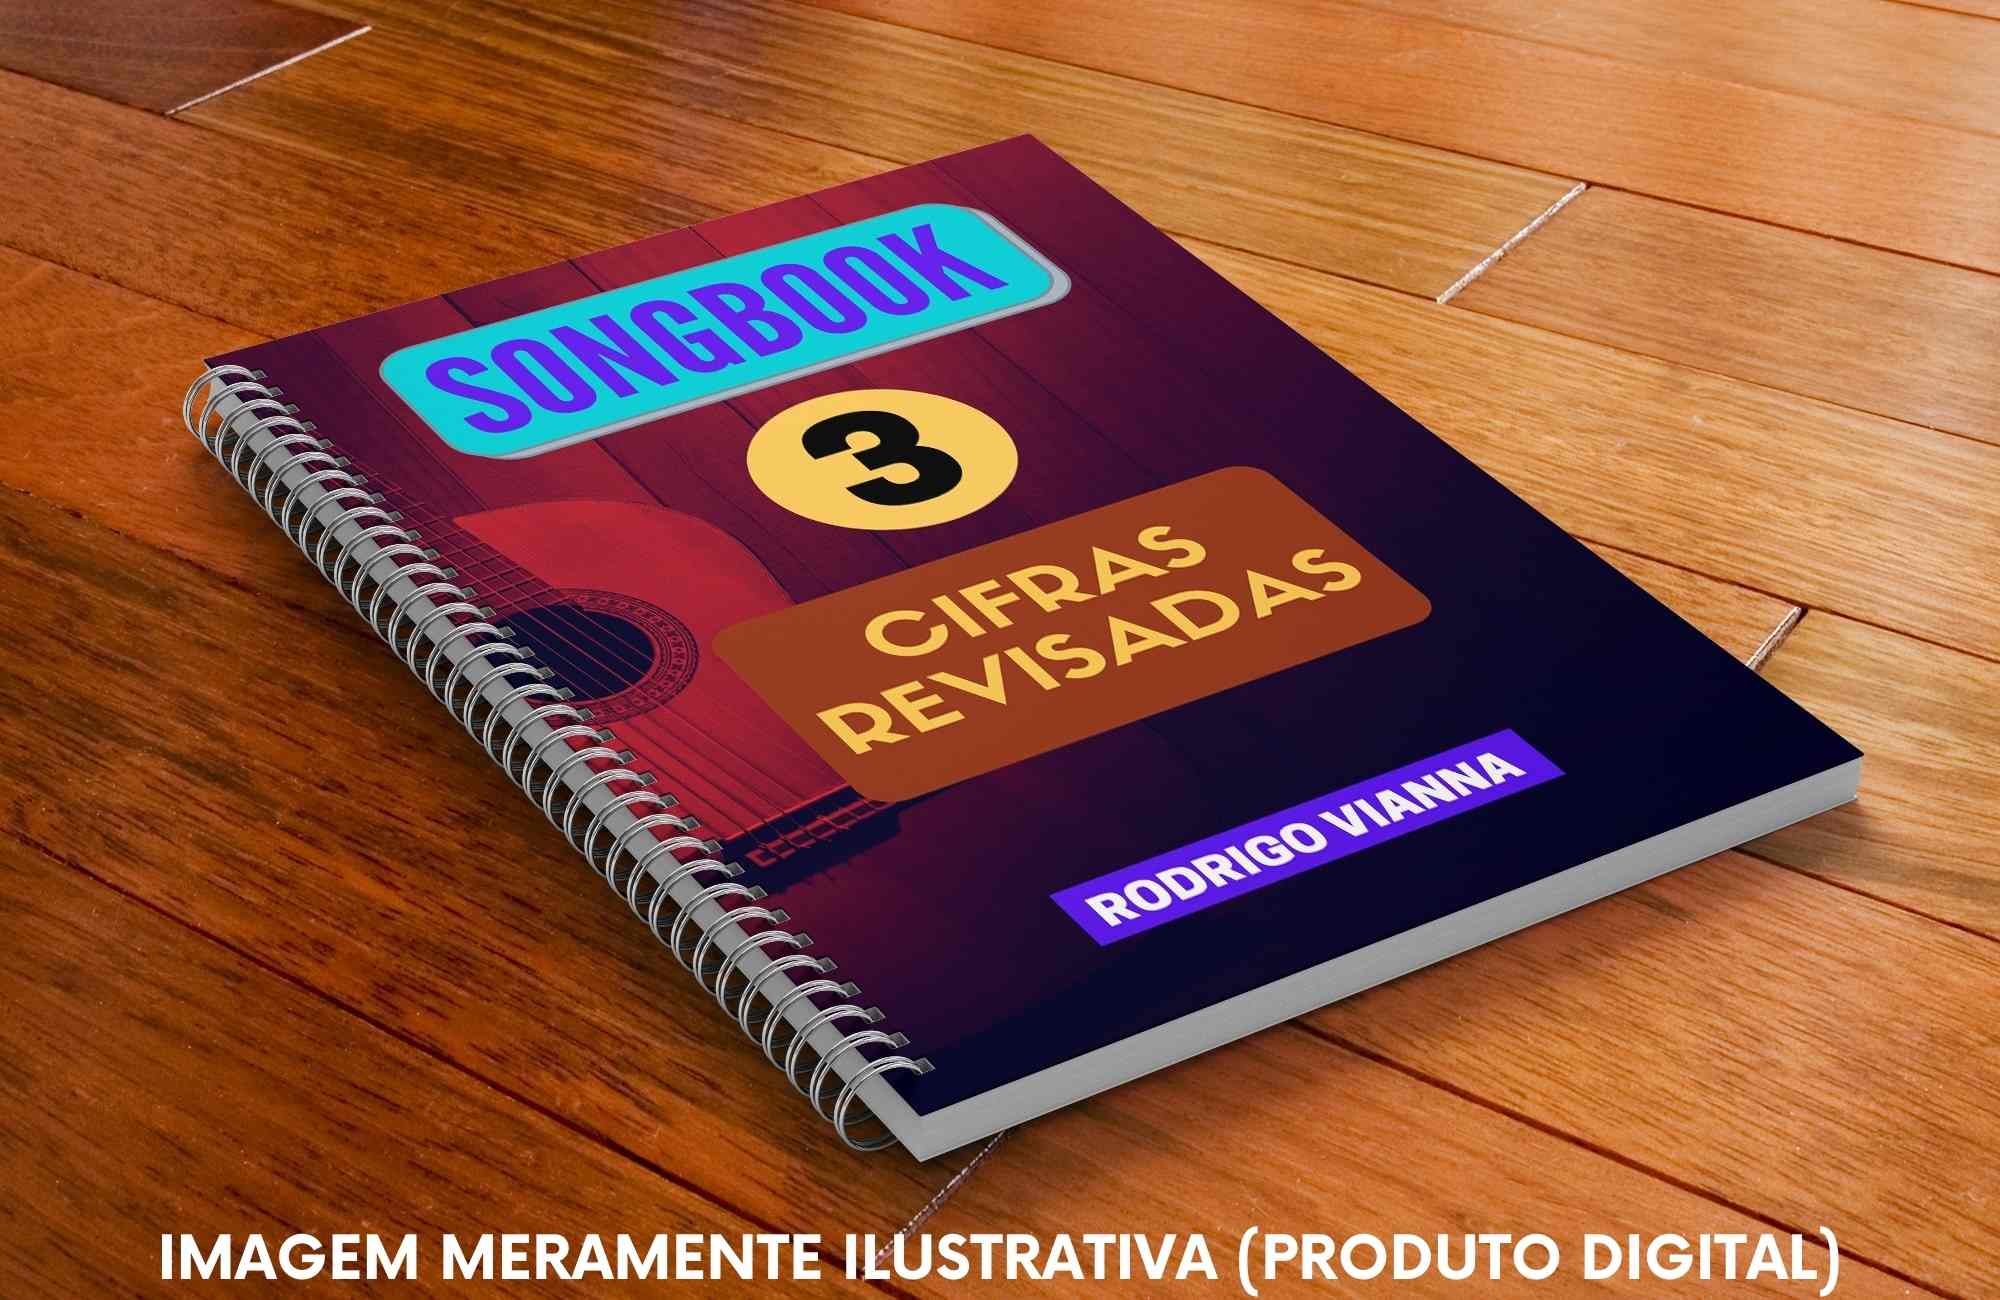 Songbook Rodrigo Vianna CIFRAS Vol. 04 + BÔNUS Songbooks 1, 2 e 3